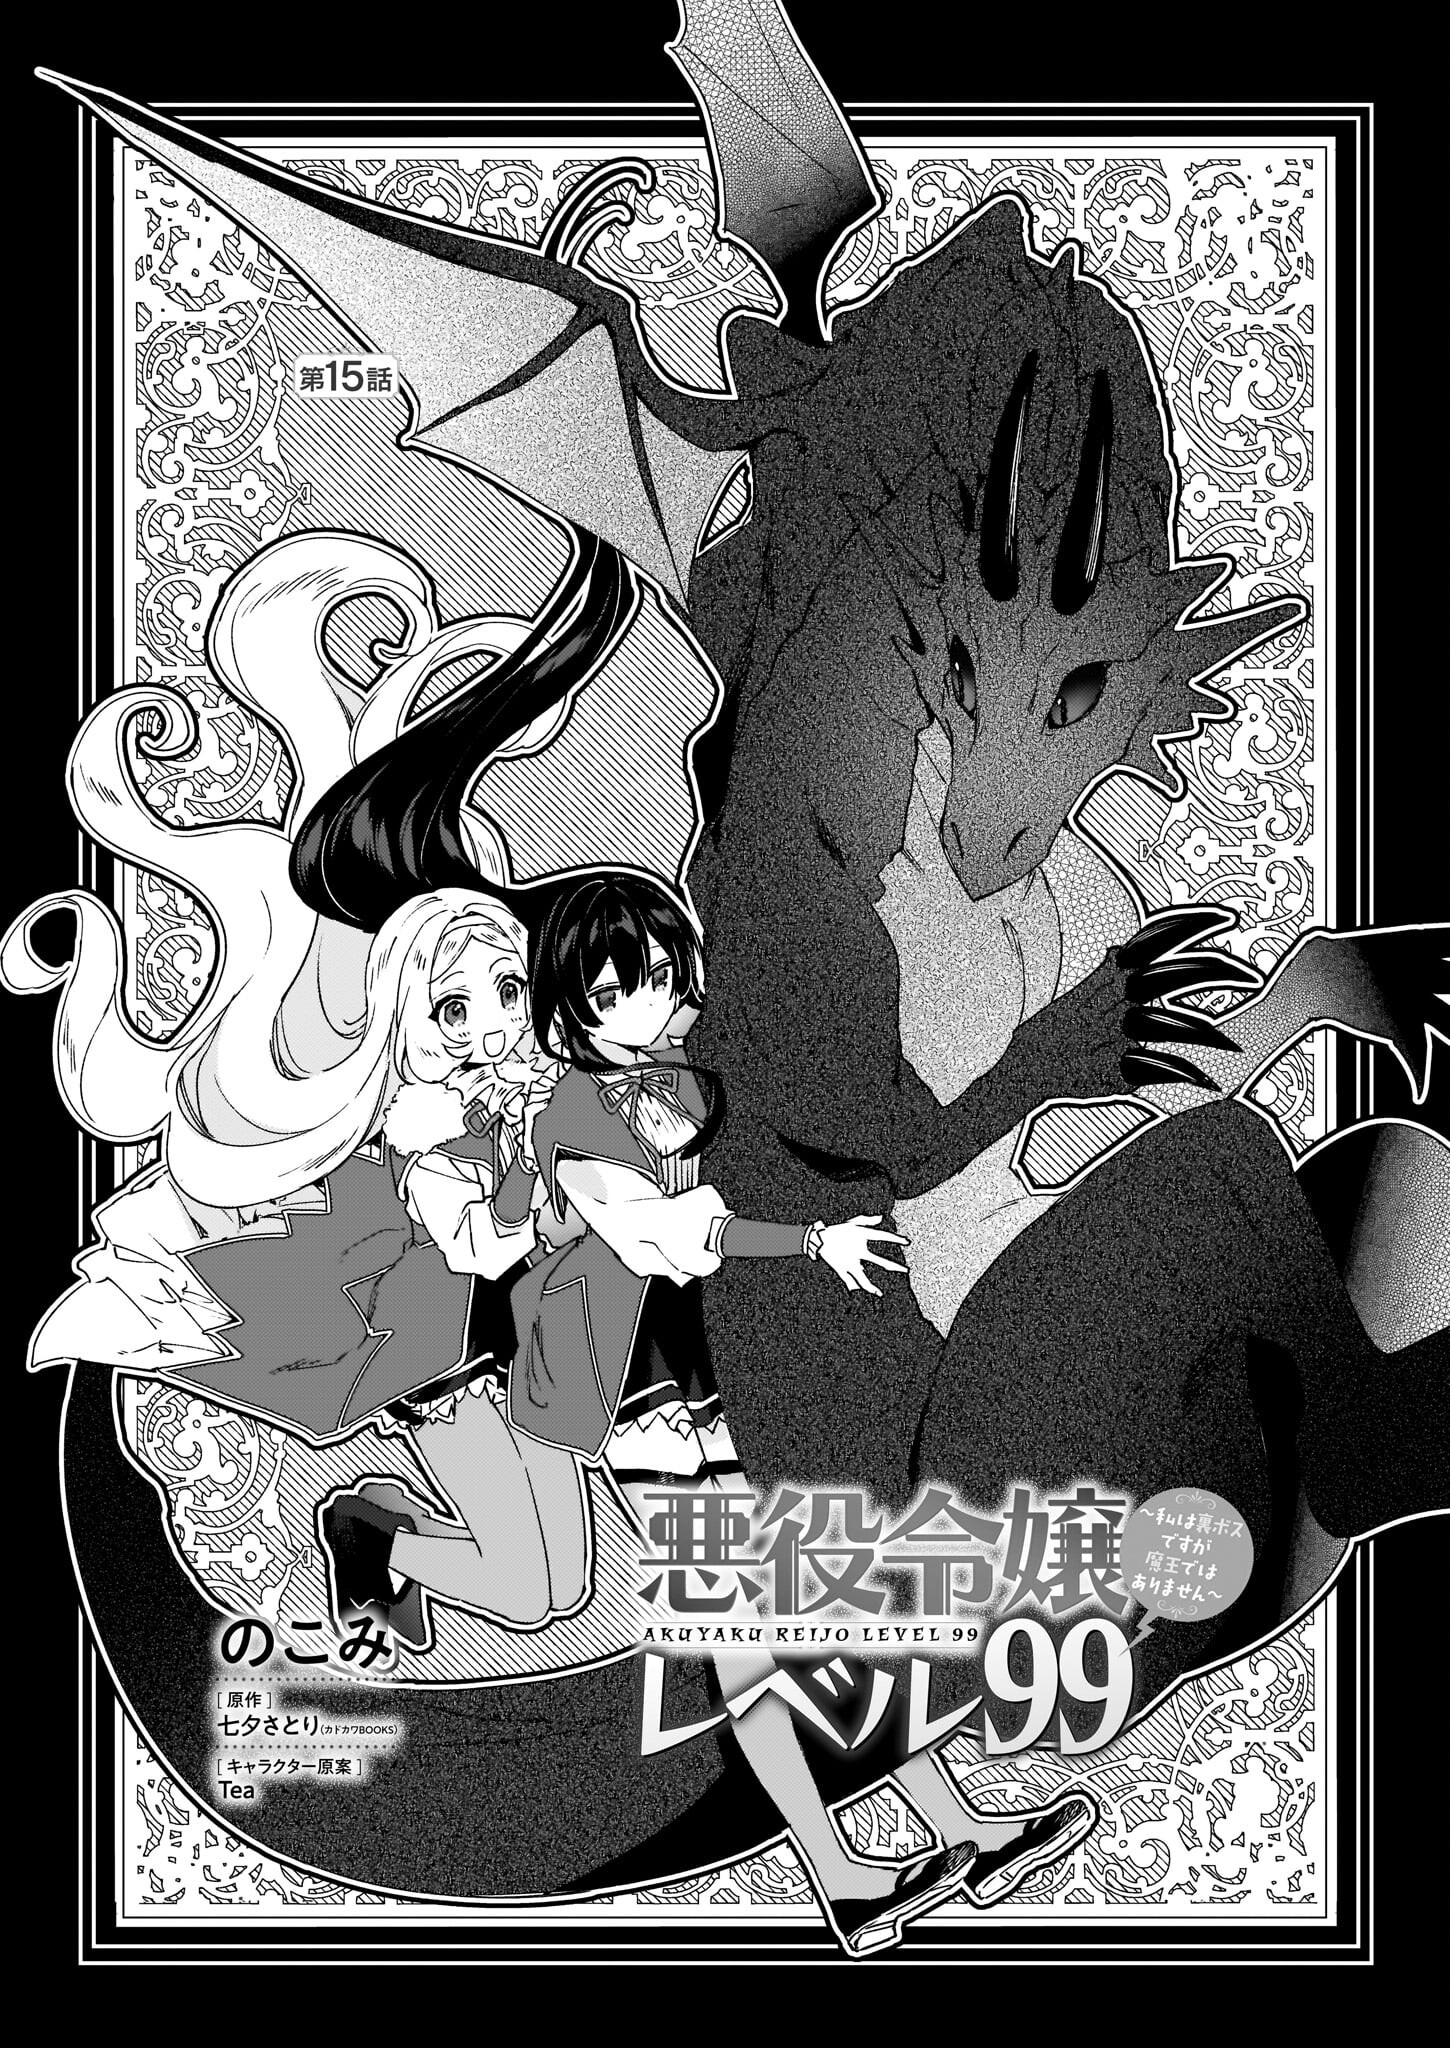 Akuyaku Reijou Level 99: Watashi wa UraBoss desu ga Maou de wa arimasen - Chapter 15 - Page 1